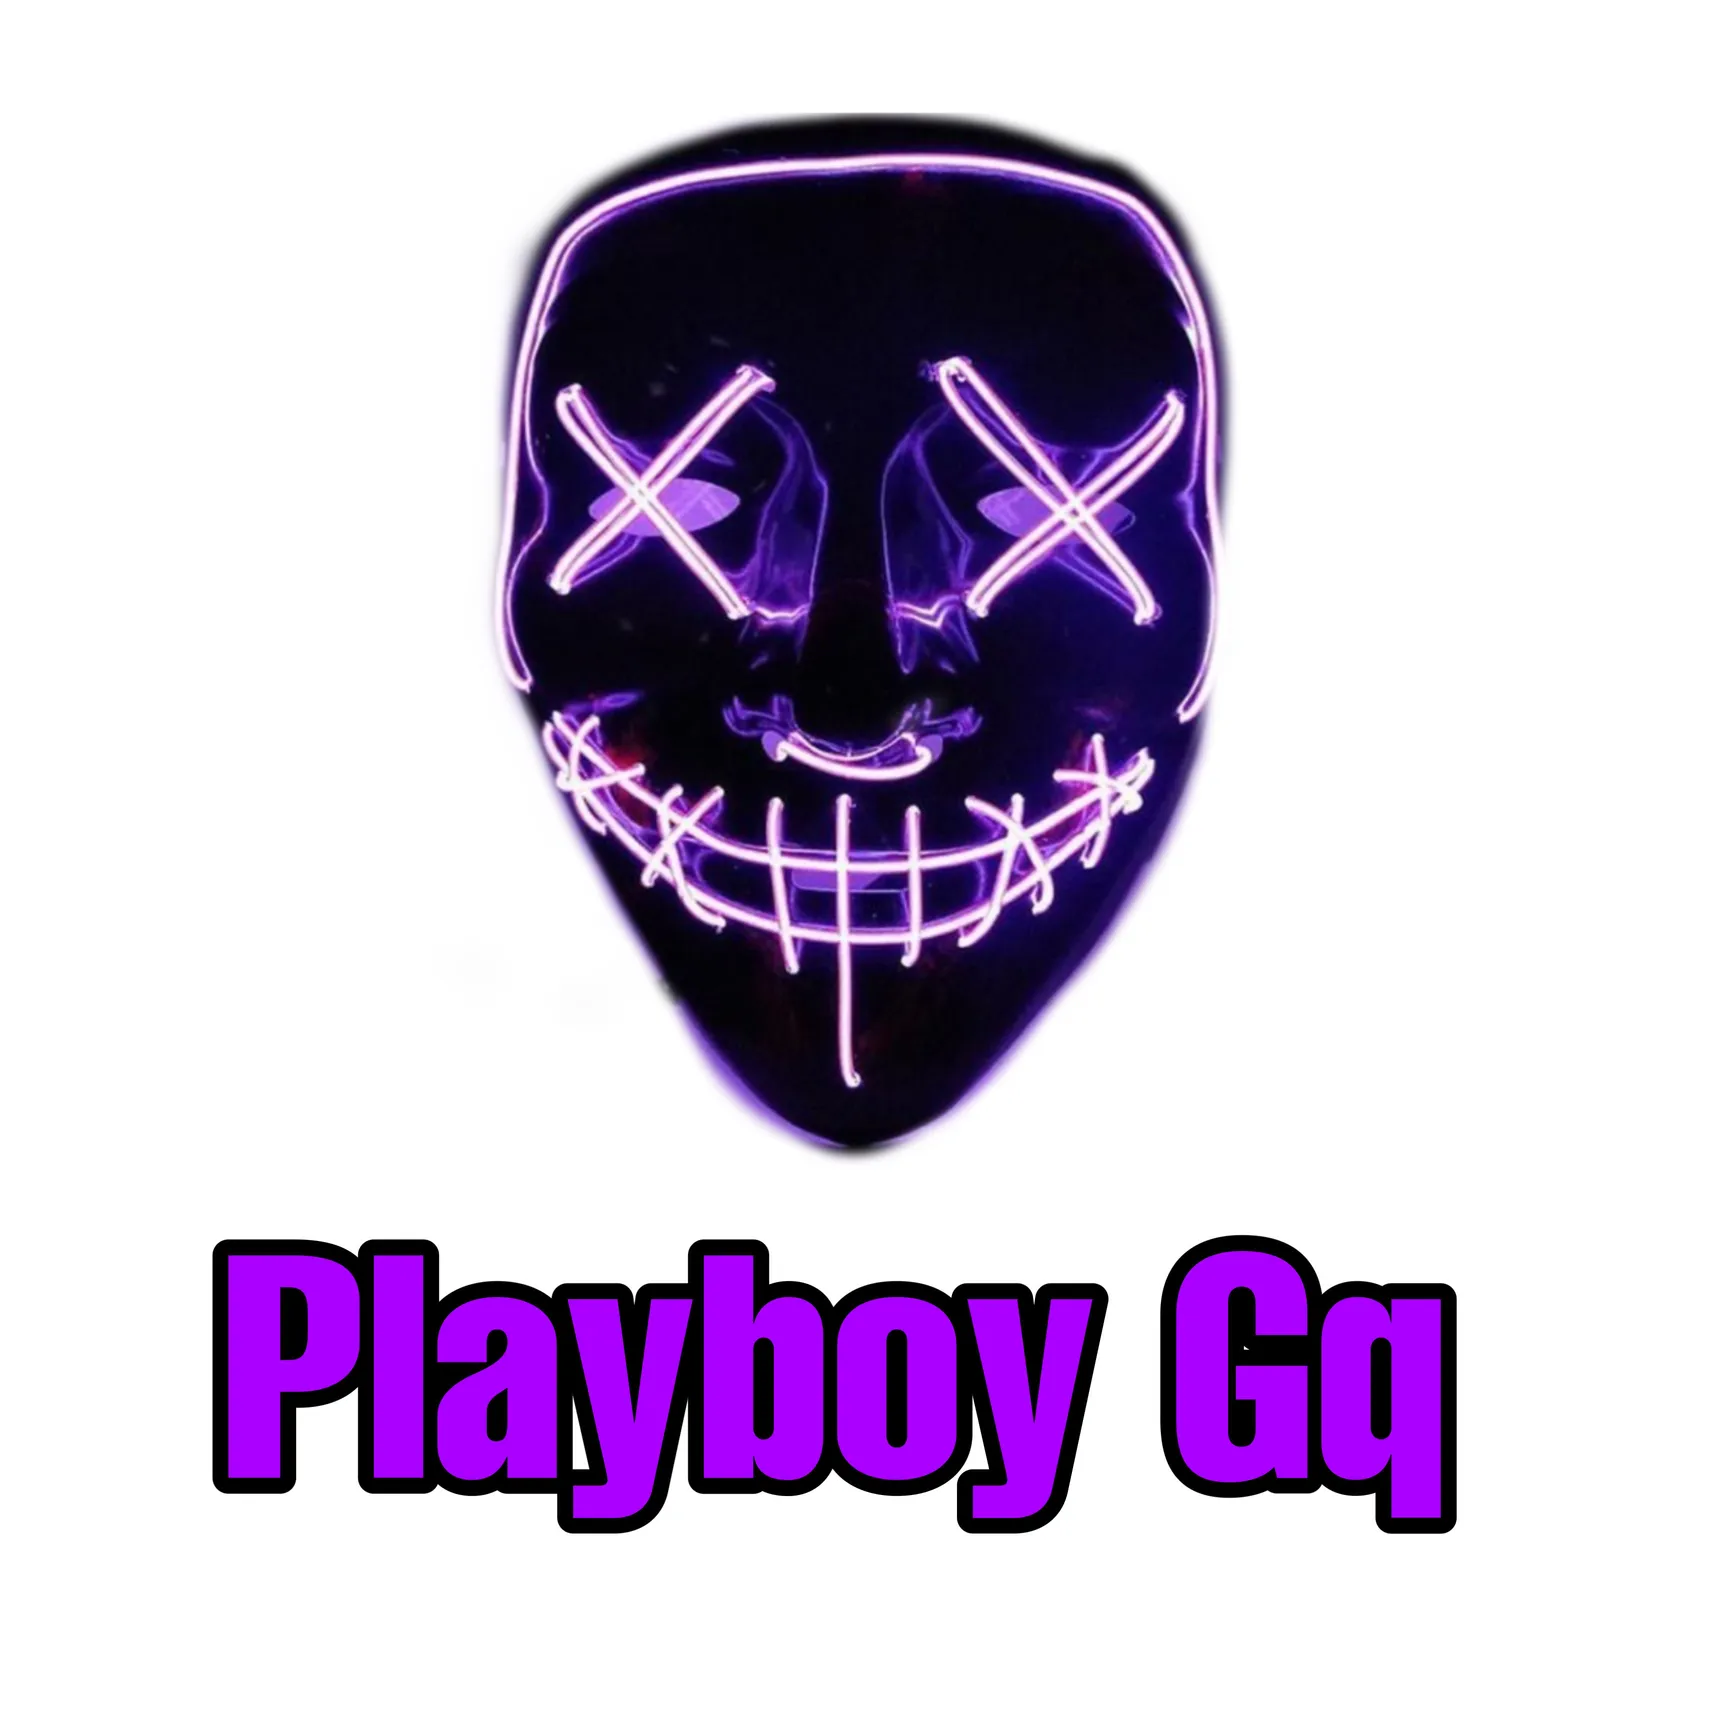 Playboy GQ